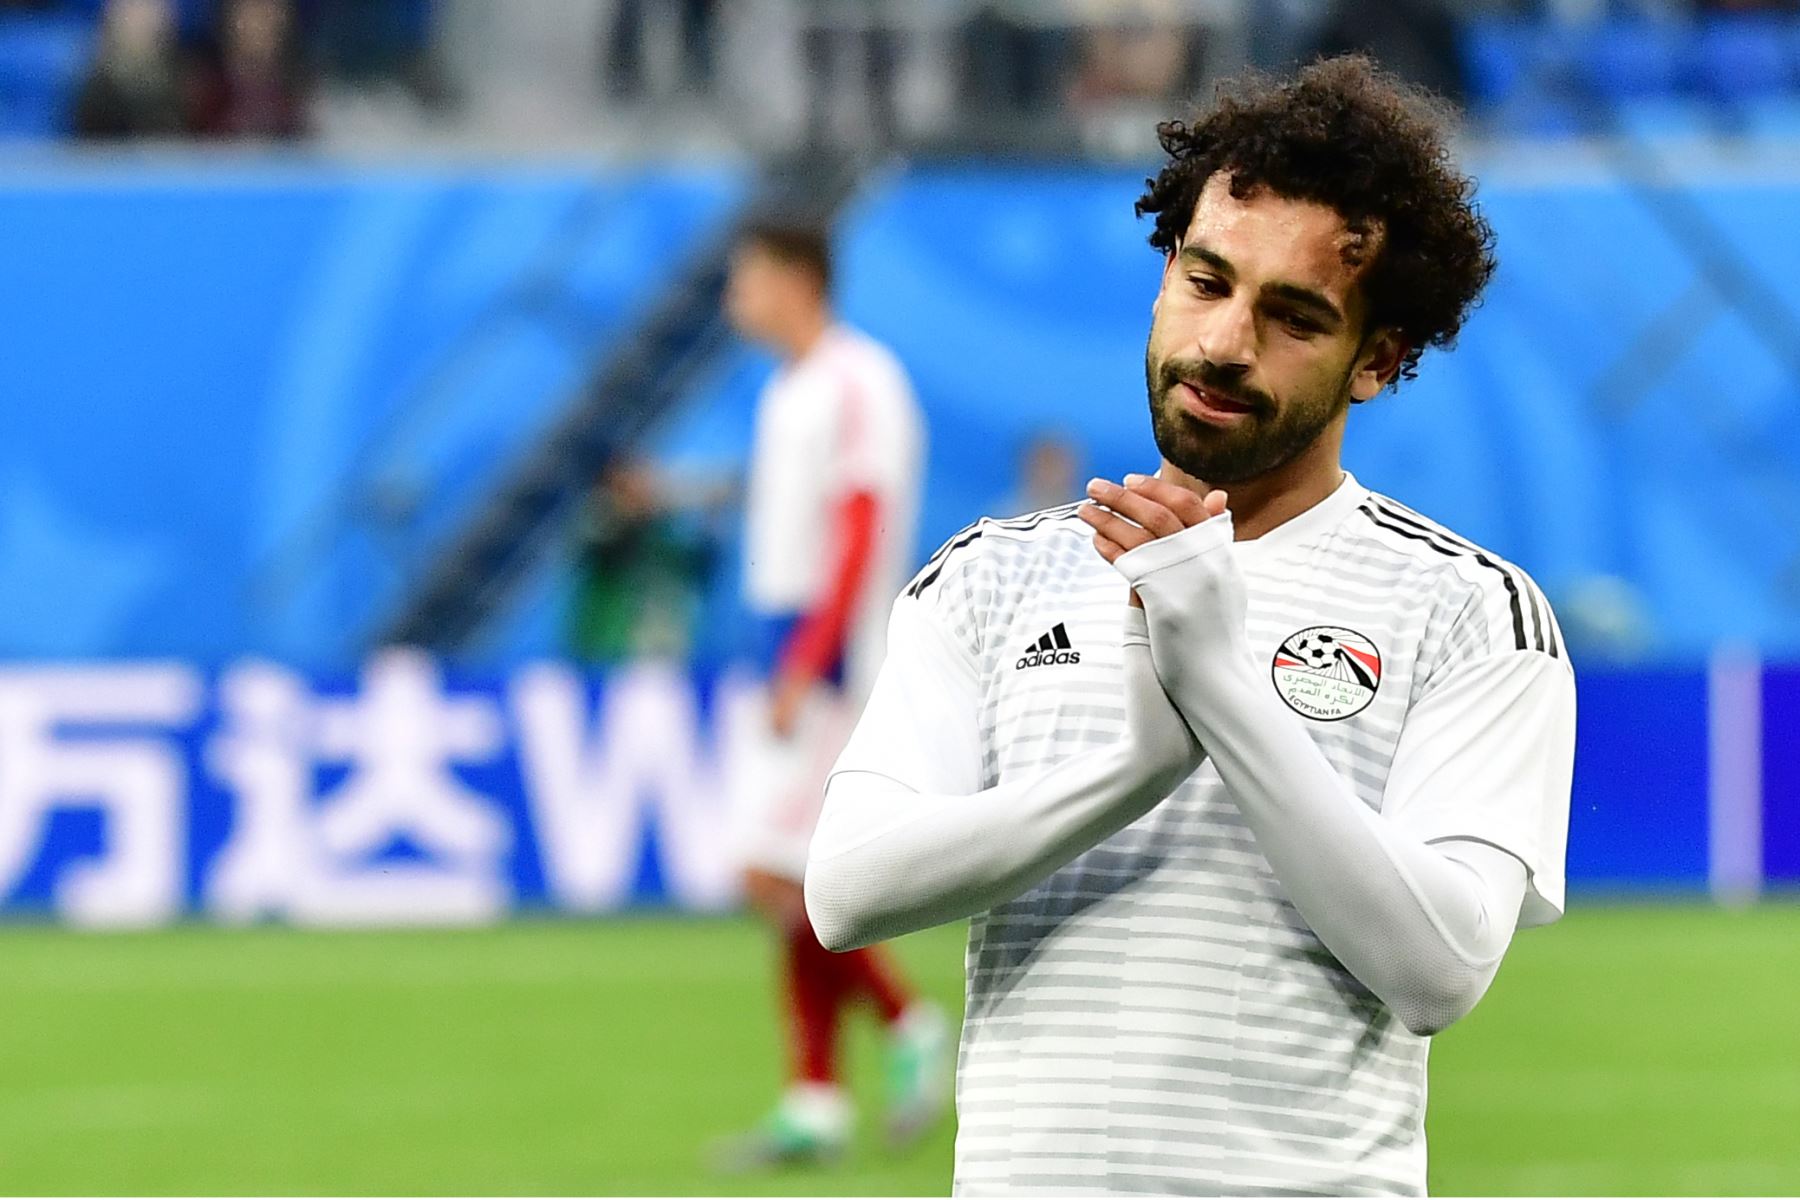 El delantero egipcio Mohamed Salah se calienta antes del partido de fútbol del Grupo A de Rusia entre Rusia y Egipto en el estadio de San Petersburgo el 19 de junio de 2018. / AFP